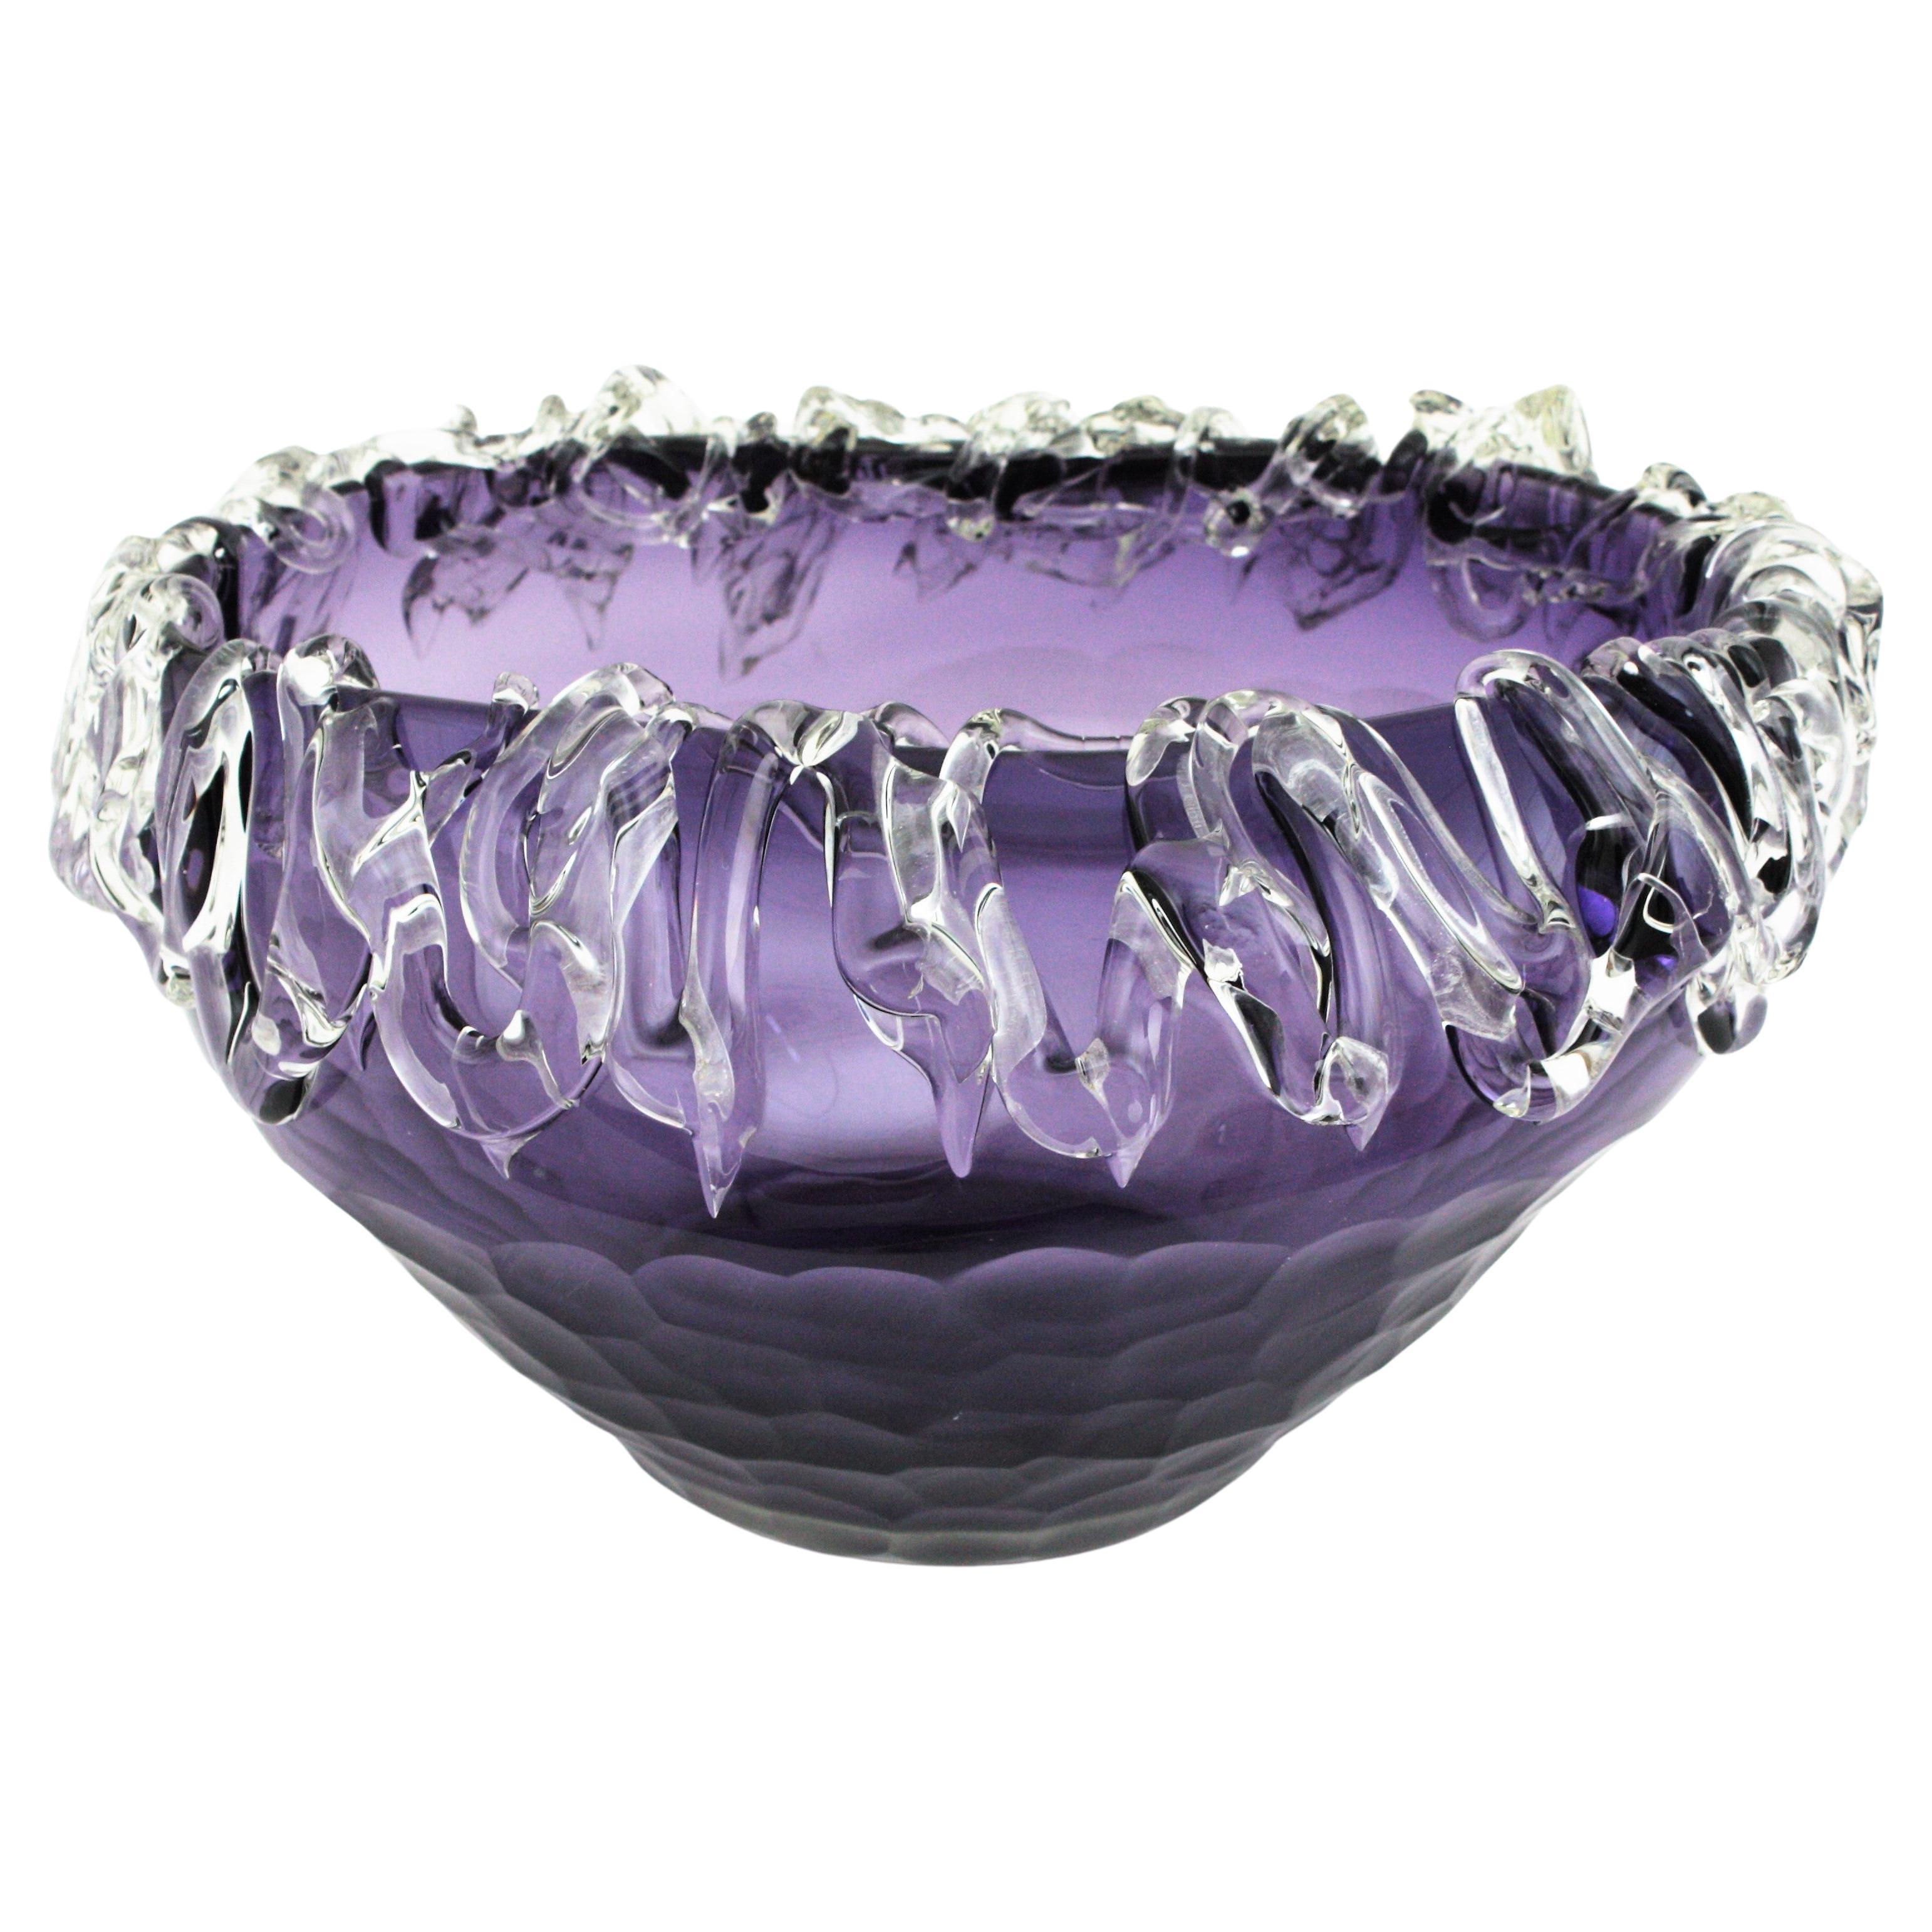 Vase aus Murano-Glas mit violettem und filigranem Rand aus klarem Glas, Italien, 1950er Jahre.
Atemberaubender mundgeblasener lilafarbener Tafelaufsatz mit facettiertem Körper und stark verziertem Rand aus klarem Glas, der mit Details versehen ist.